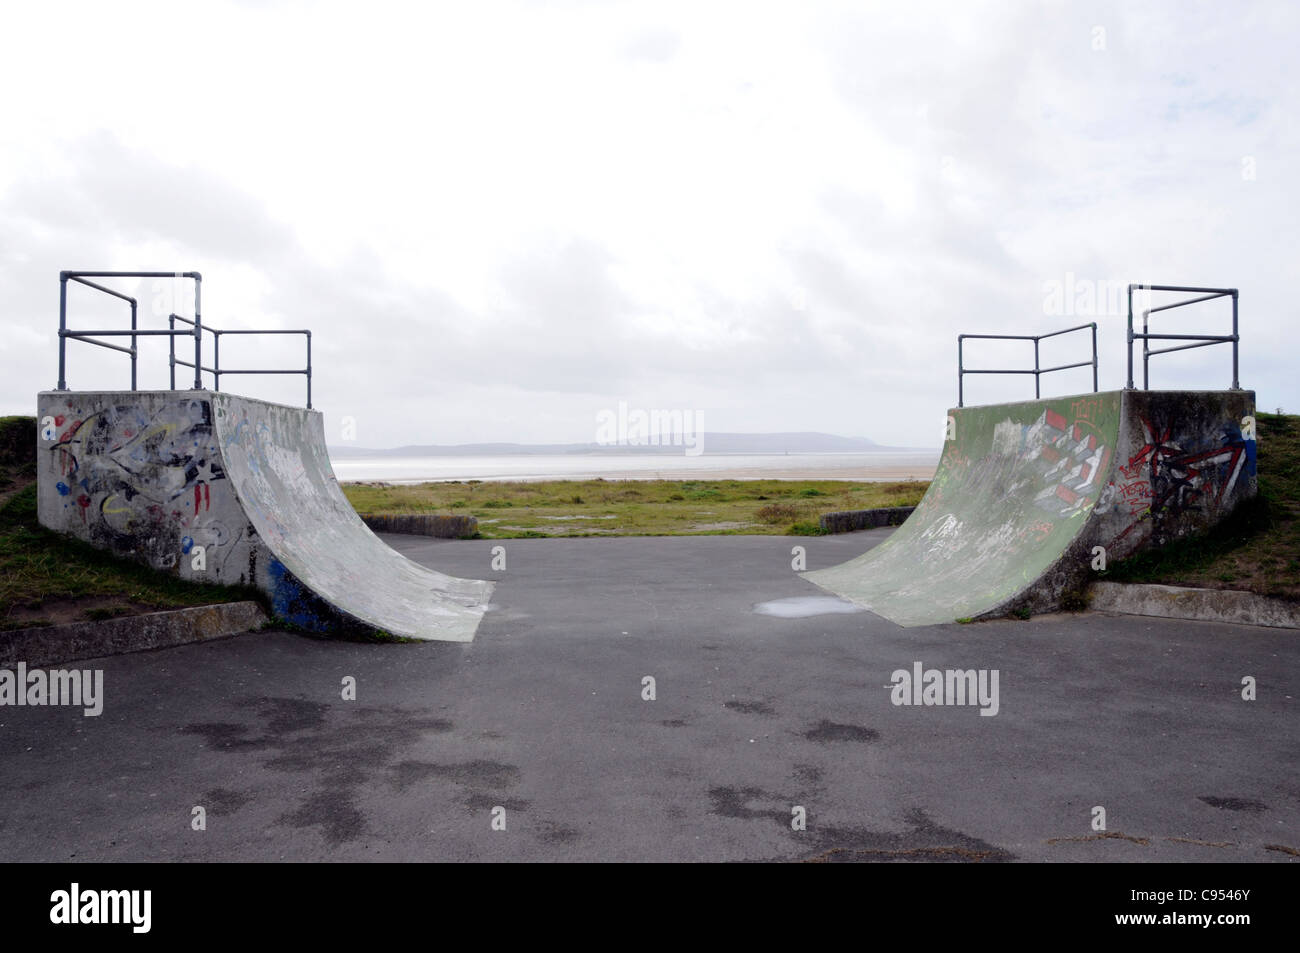 Heureux skate rampe sur la côte, au Royaume-Uni. Banque D'Images